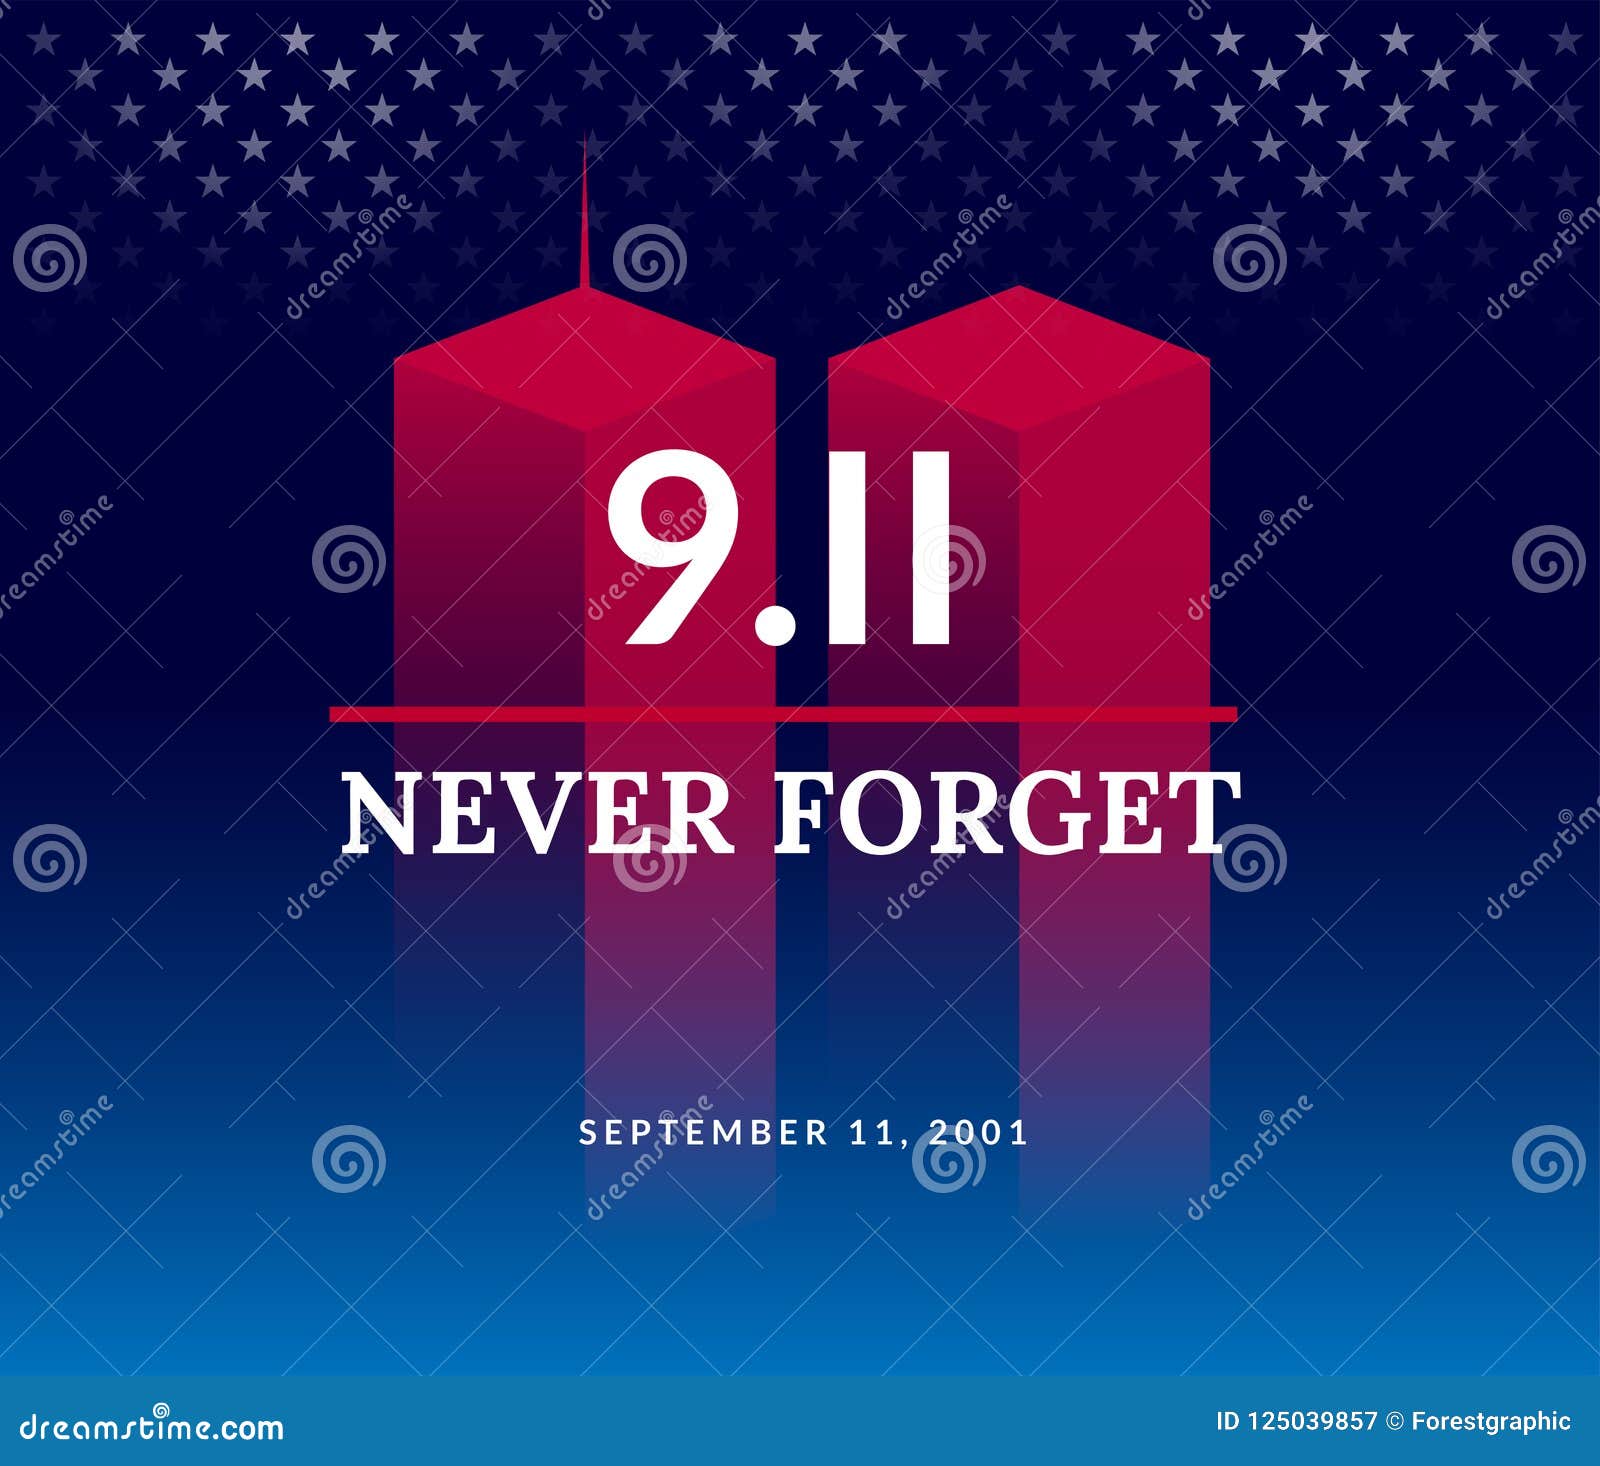 9/11 usa never forget september 11, 2001.  conceptual illu